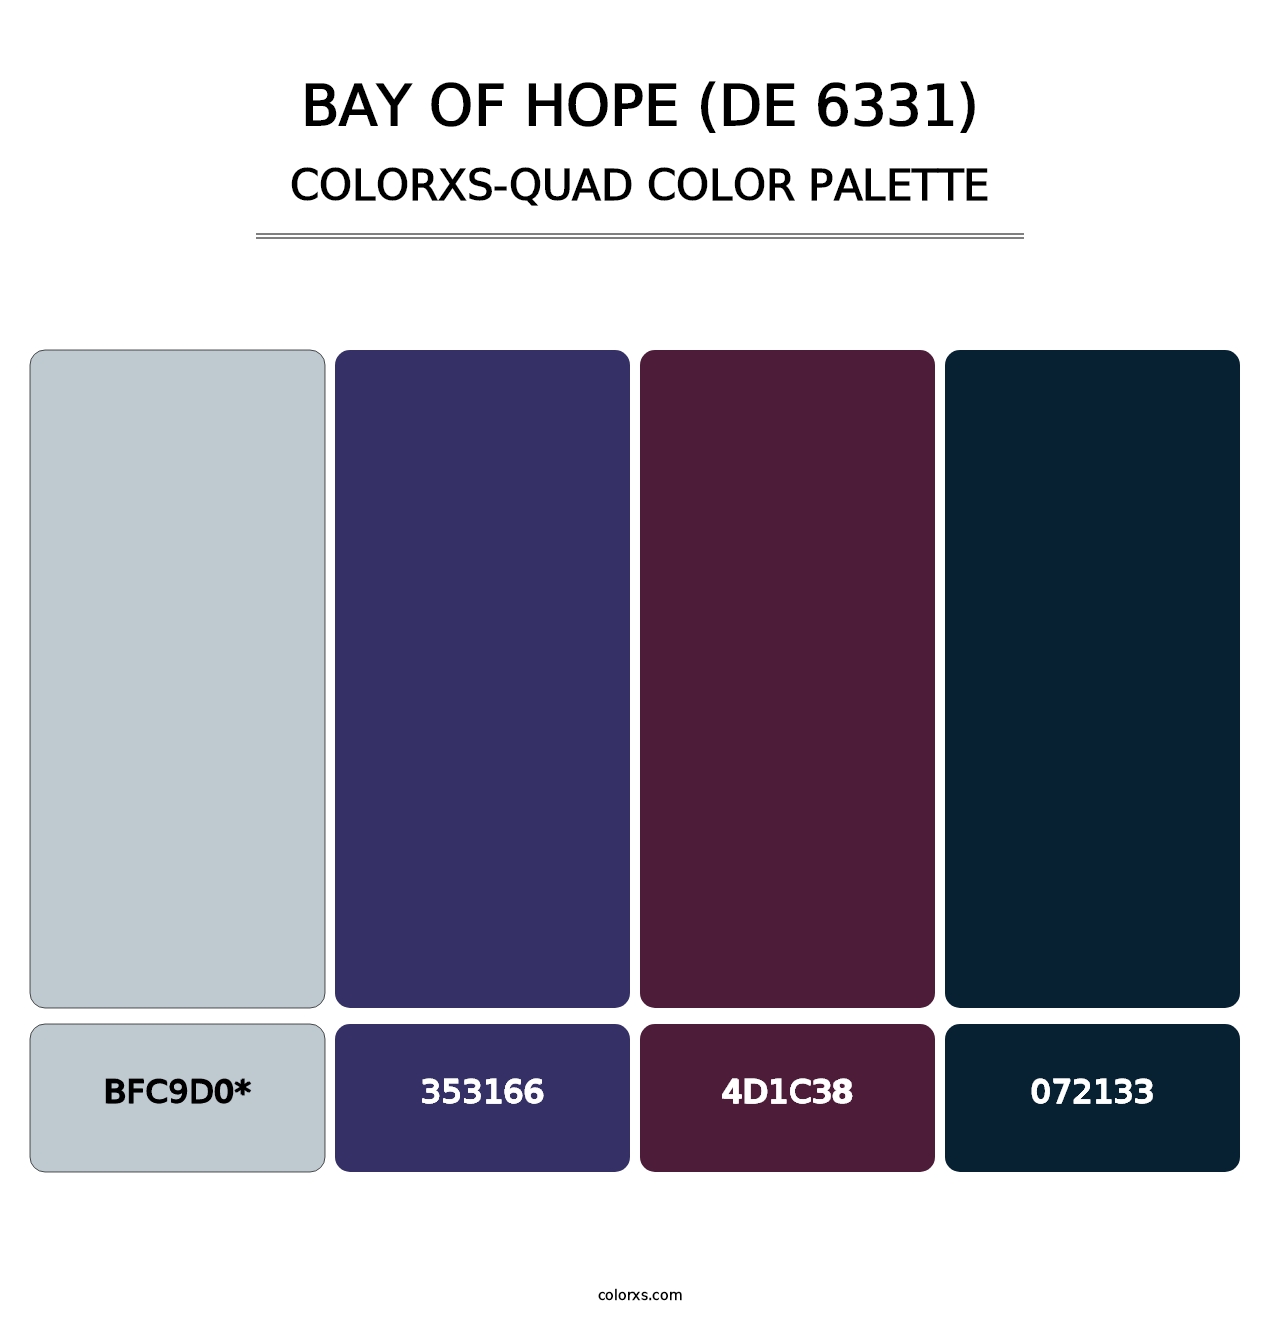 Bay of Hope (DE 6331) - Colorxs Quad Palette